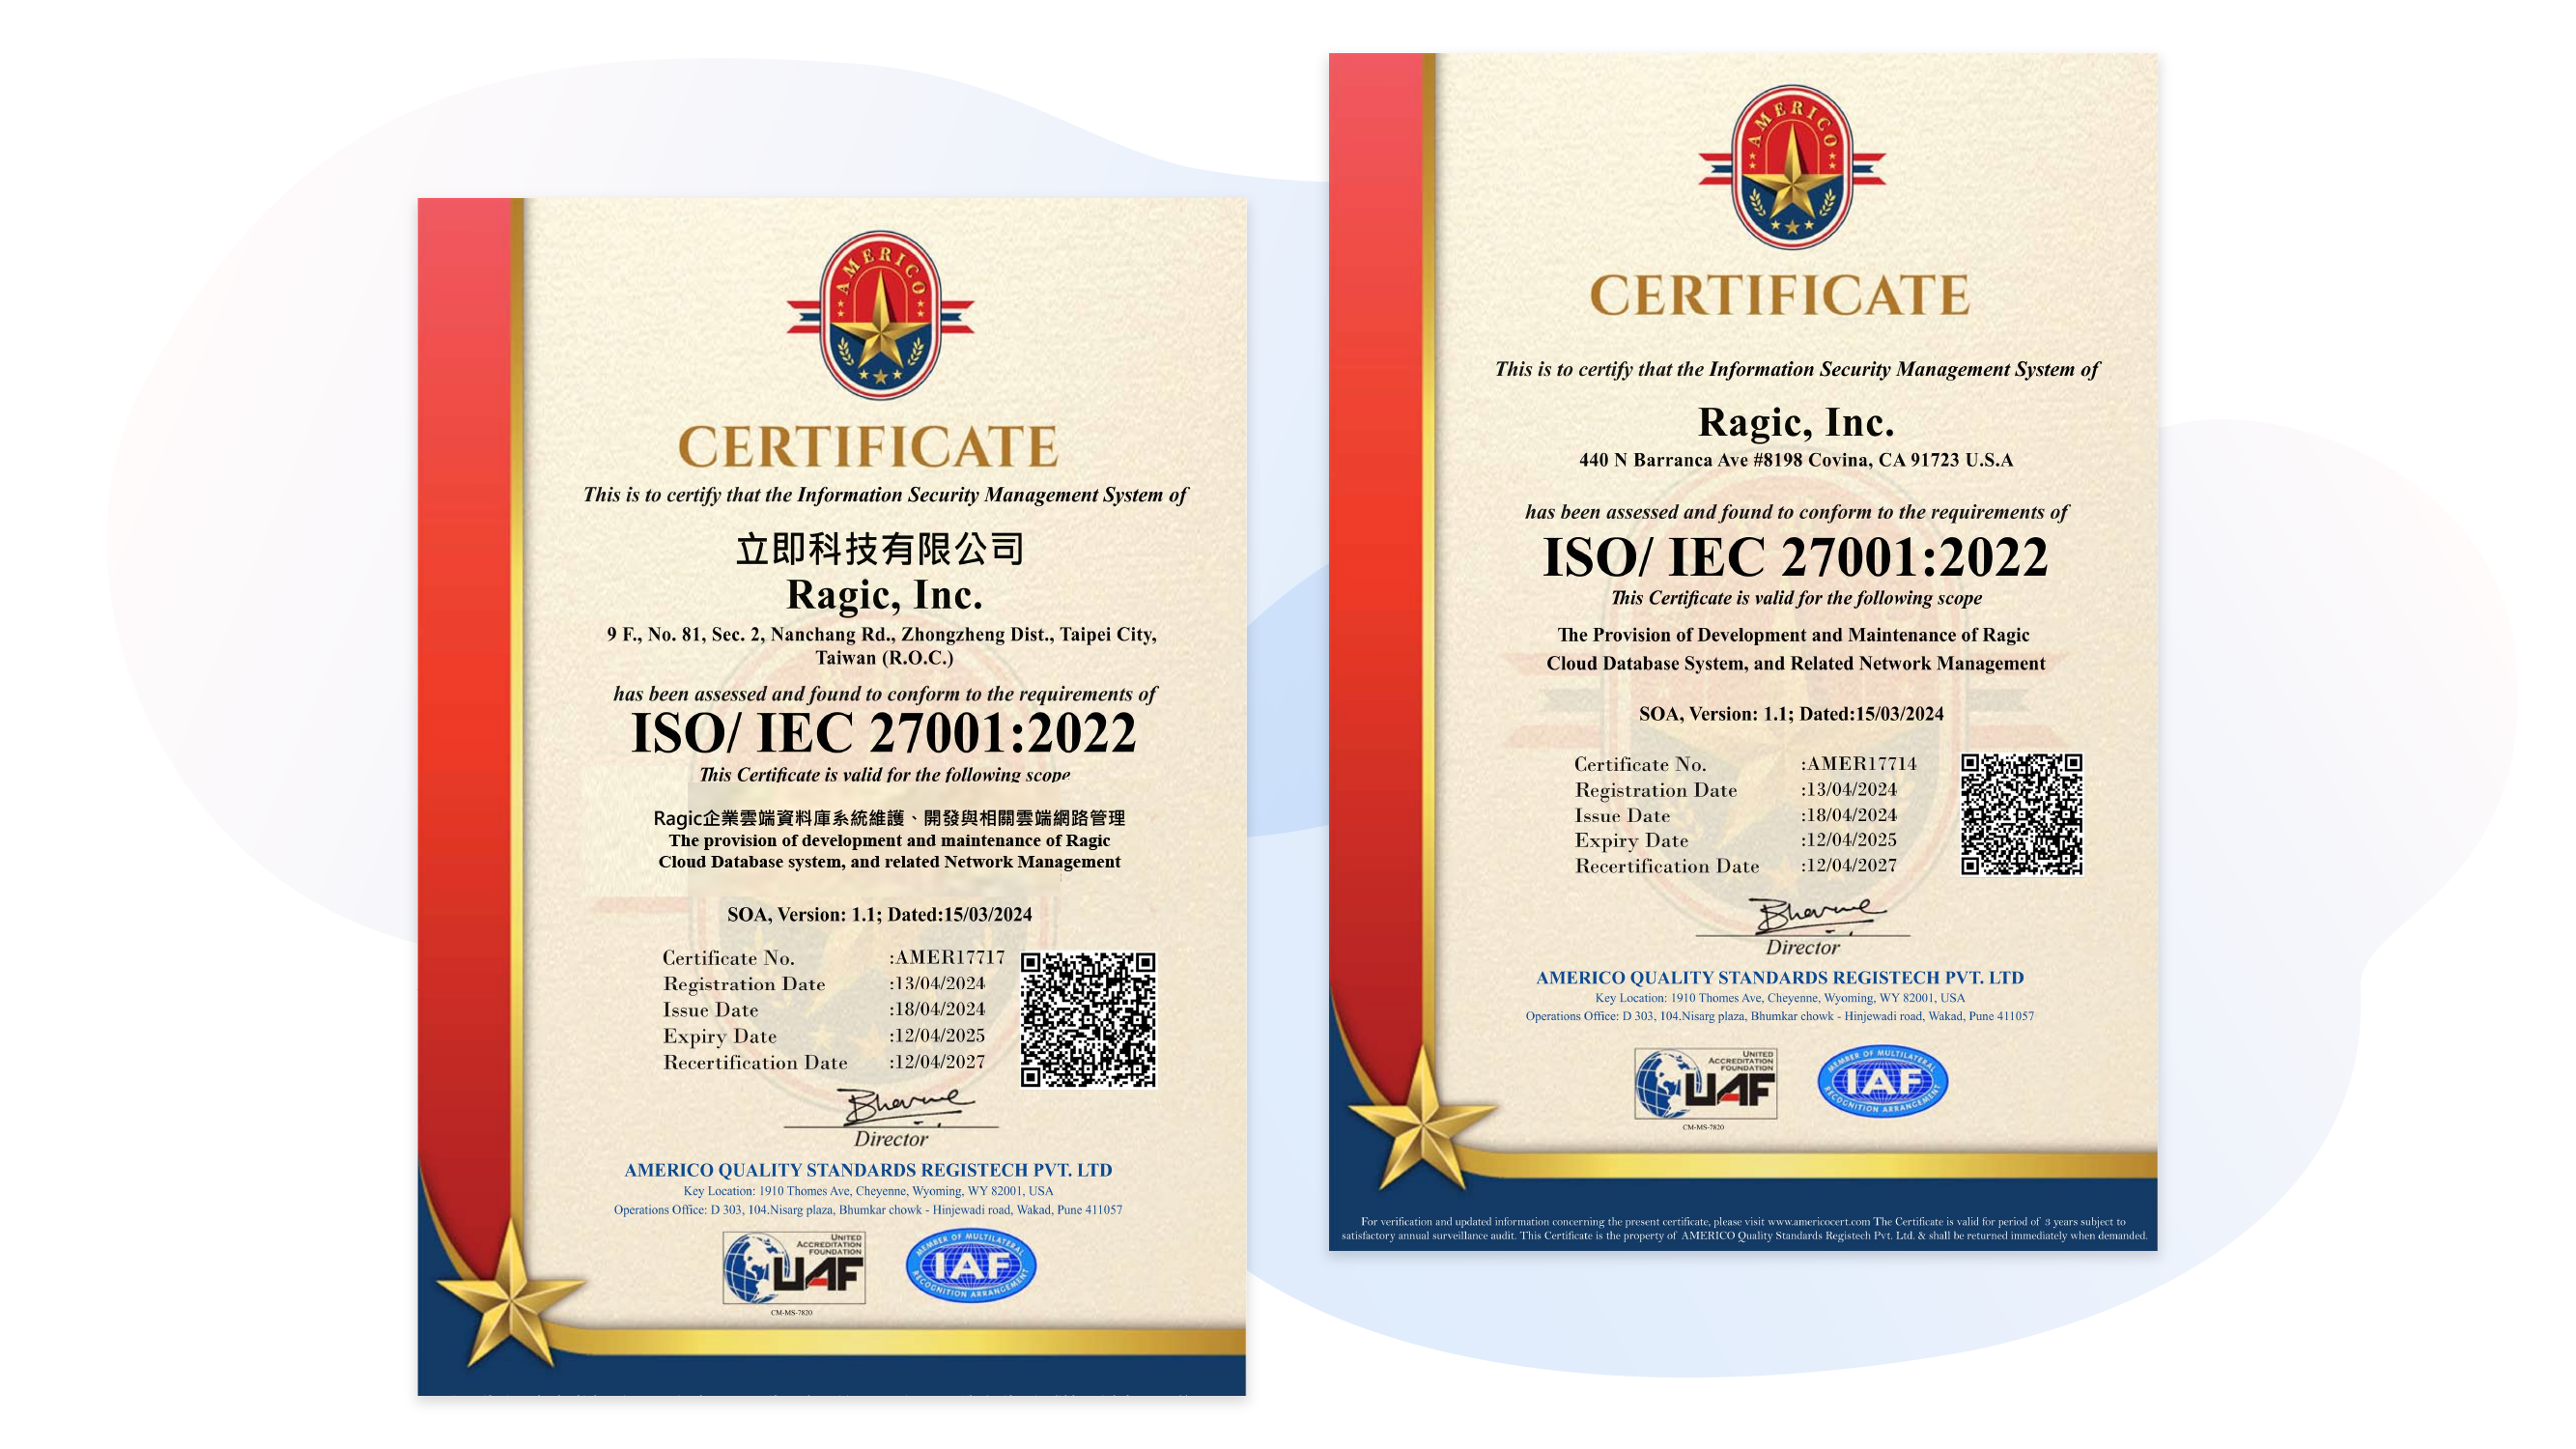 通過 ISO/IEC 27001
Ragic 已取得 ISO/IEC 27001：2013 認證，遵循相關資安流程。